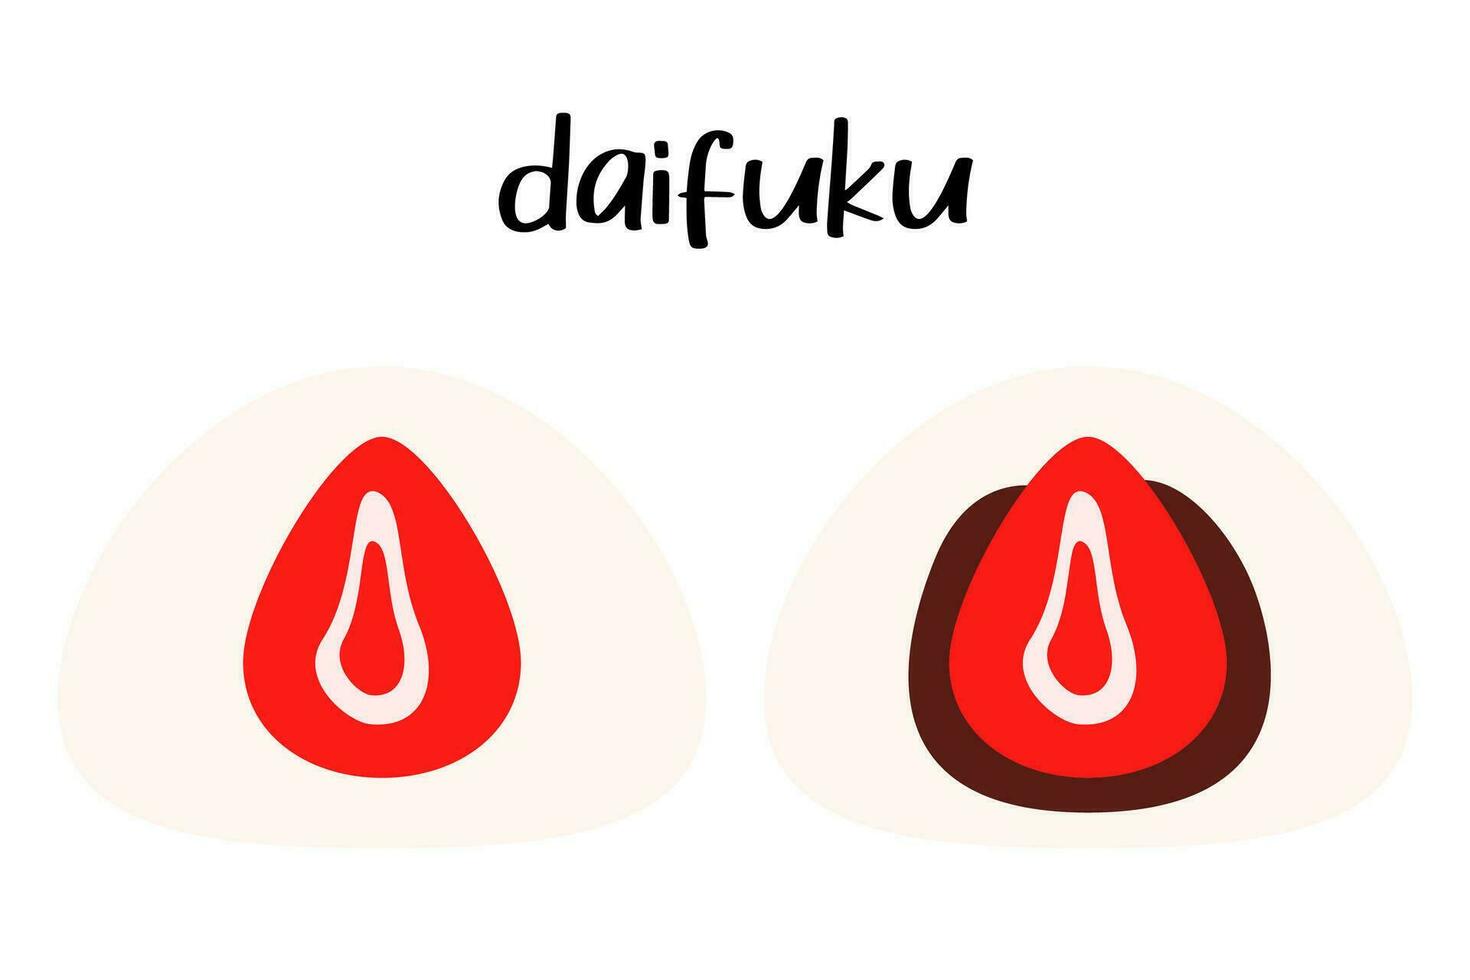 fresa daifuku. japonés postres Japón y asiático alimento. redondo mochi rojo frijol o chocolate. vector plano aislado ilustración.